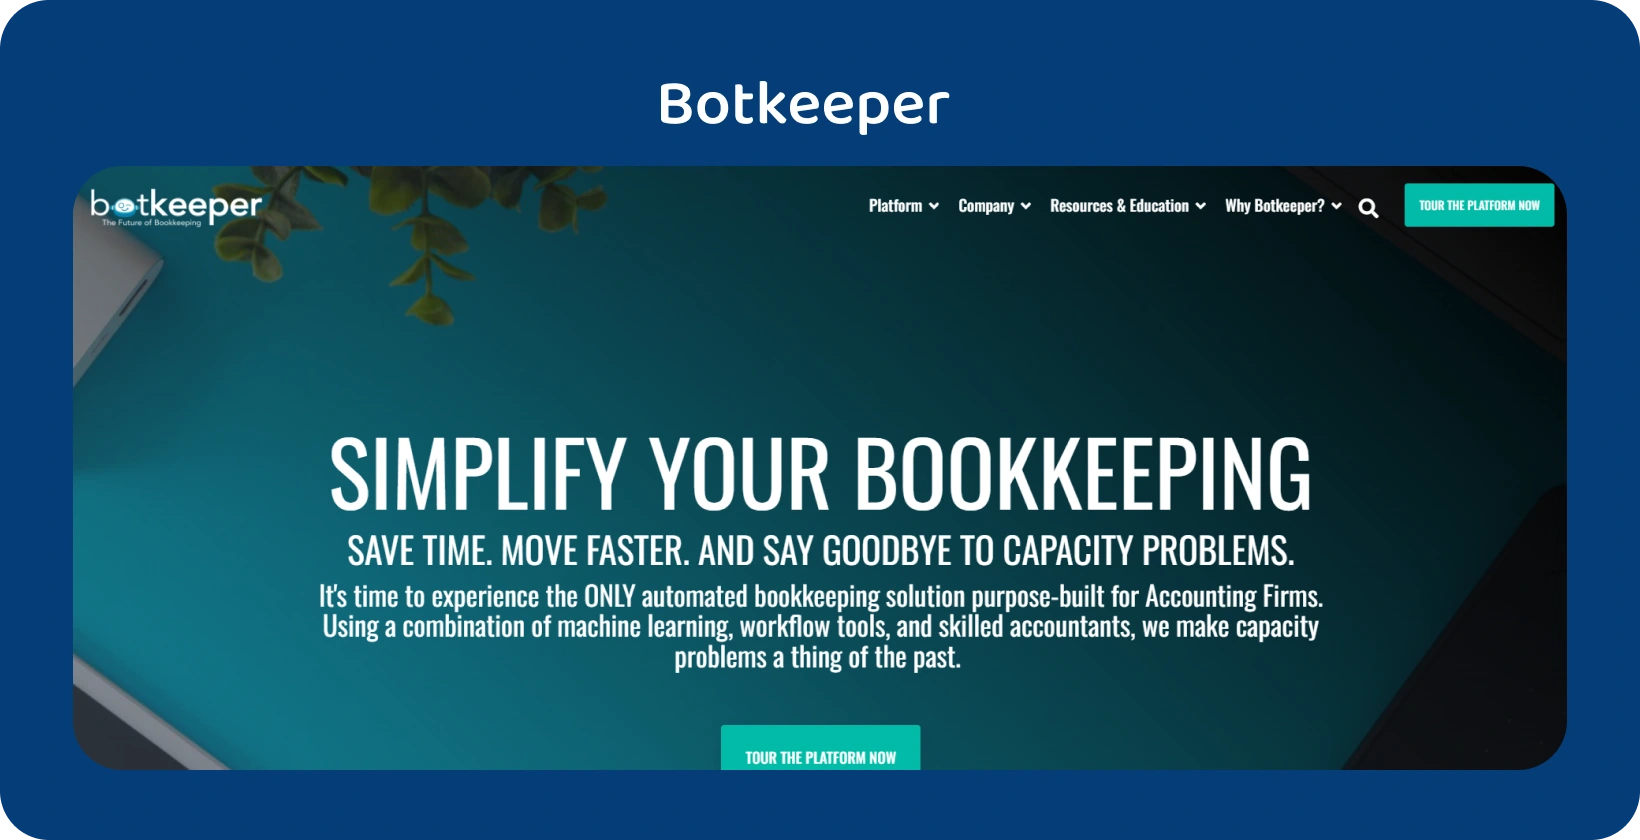 A Botkeeper honlapja kiemeli a könyvelők könyvelésének egyszerűsítését automatizálási technológiája révén.